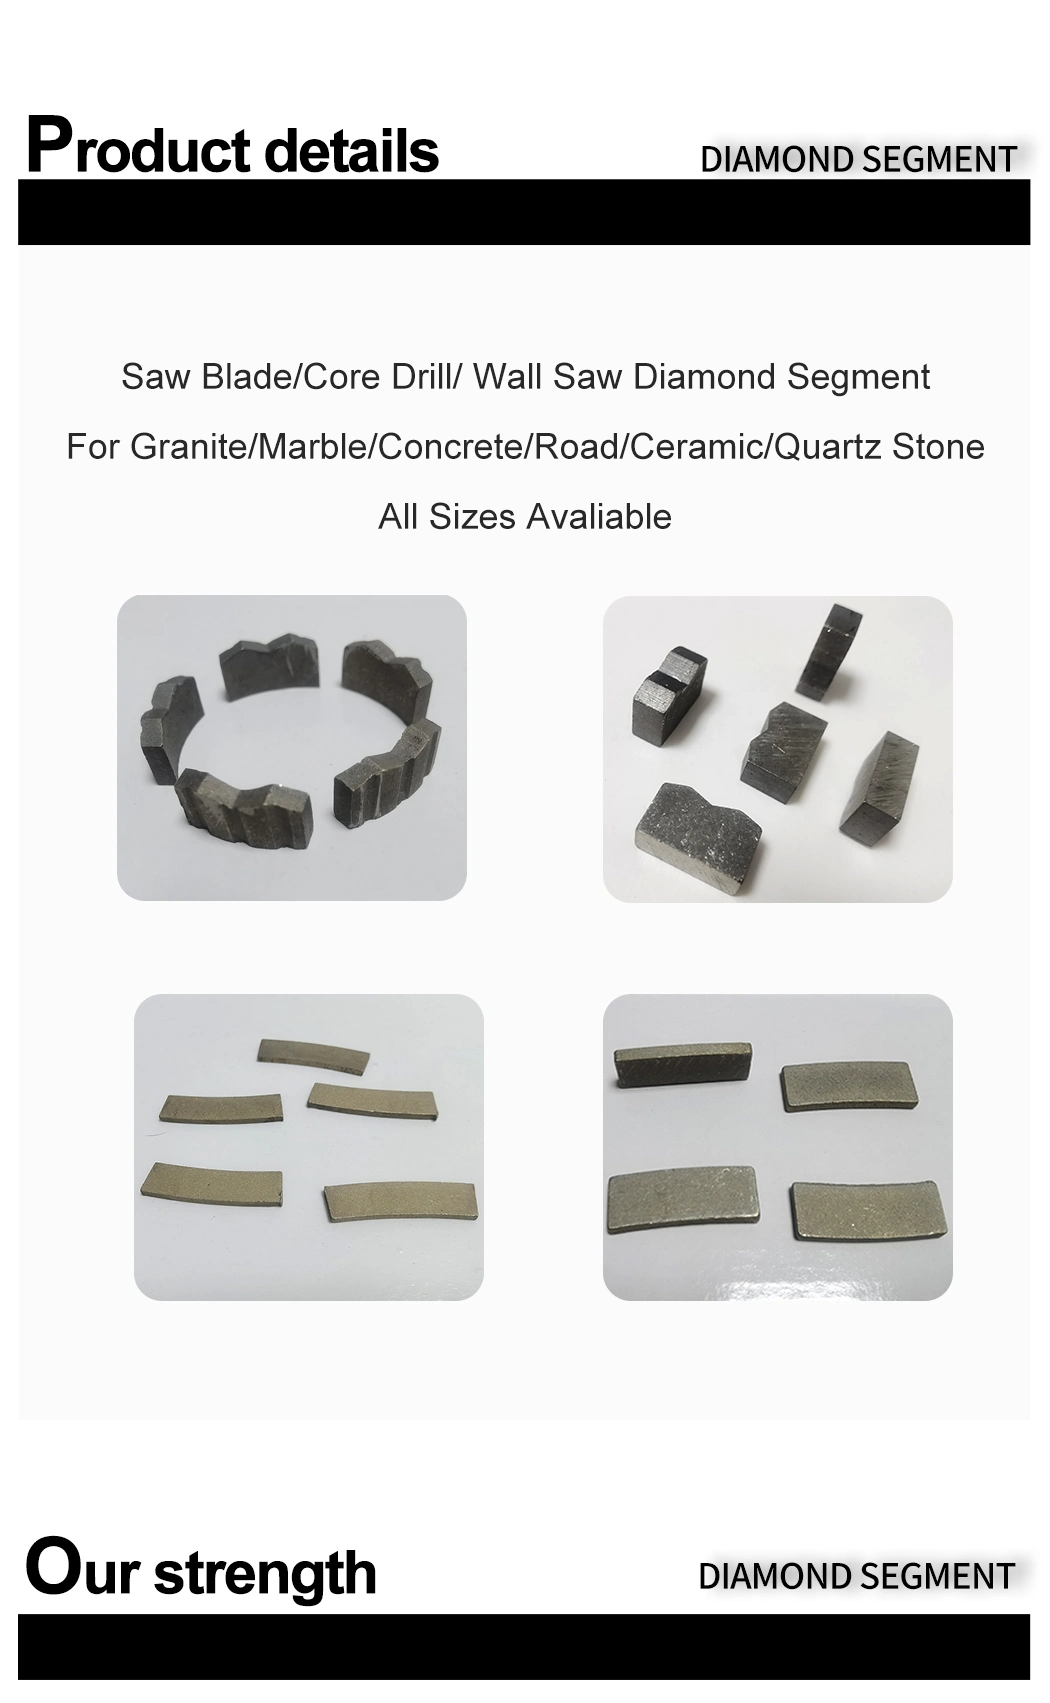 Φ 1000 24*7/6.4*12 Long Lifespan Diamond Saw Blade Wall Saw Hole Saw Core Drill Bit Segments for Hard Granite Factory Price